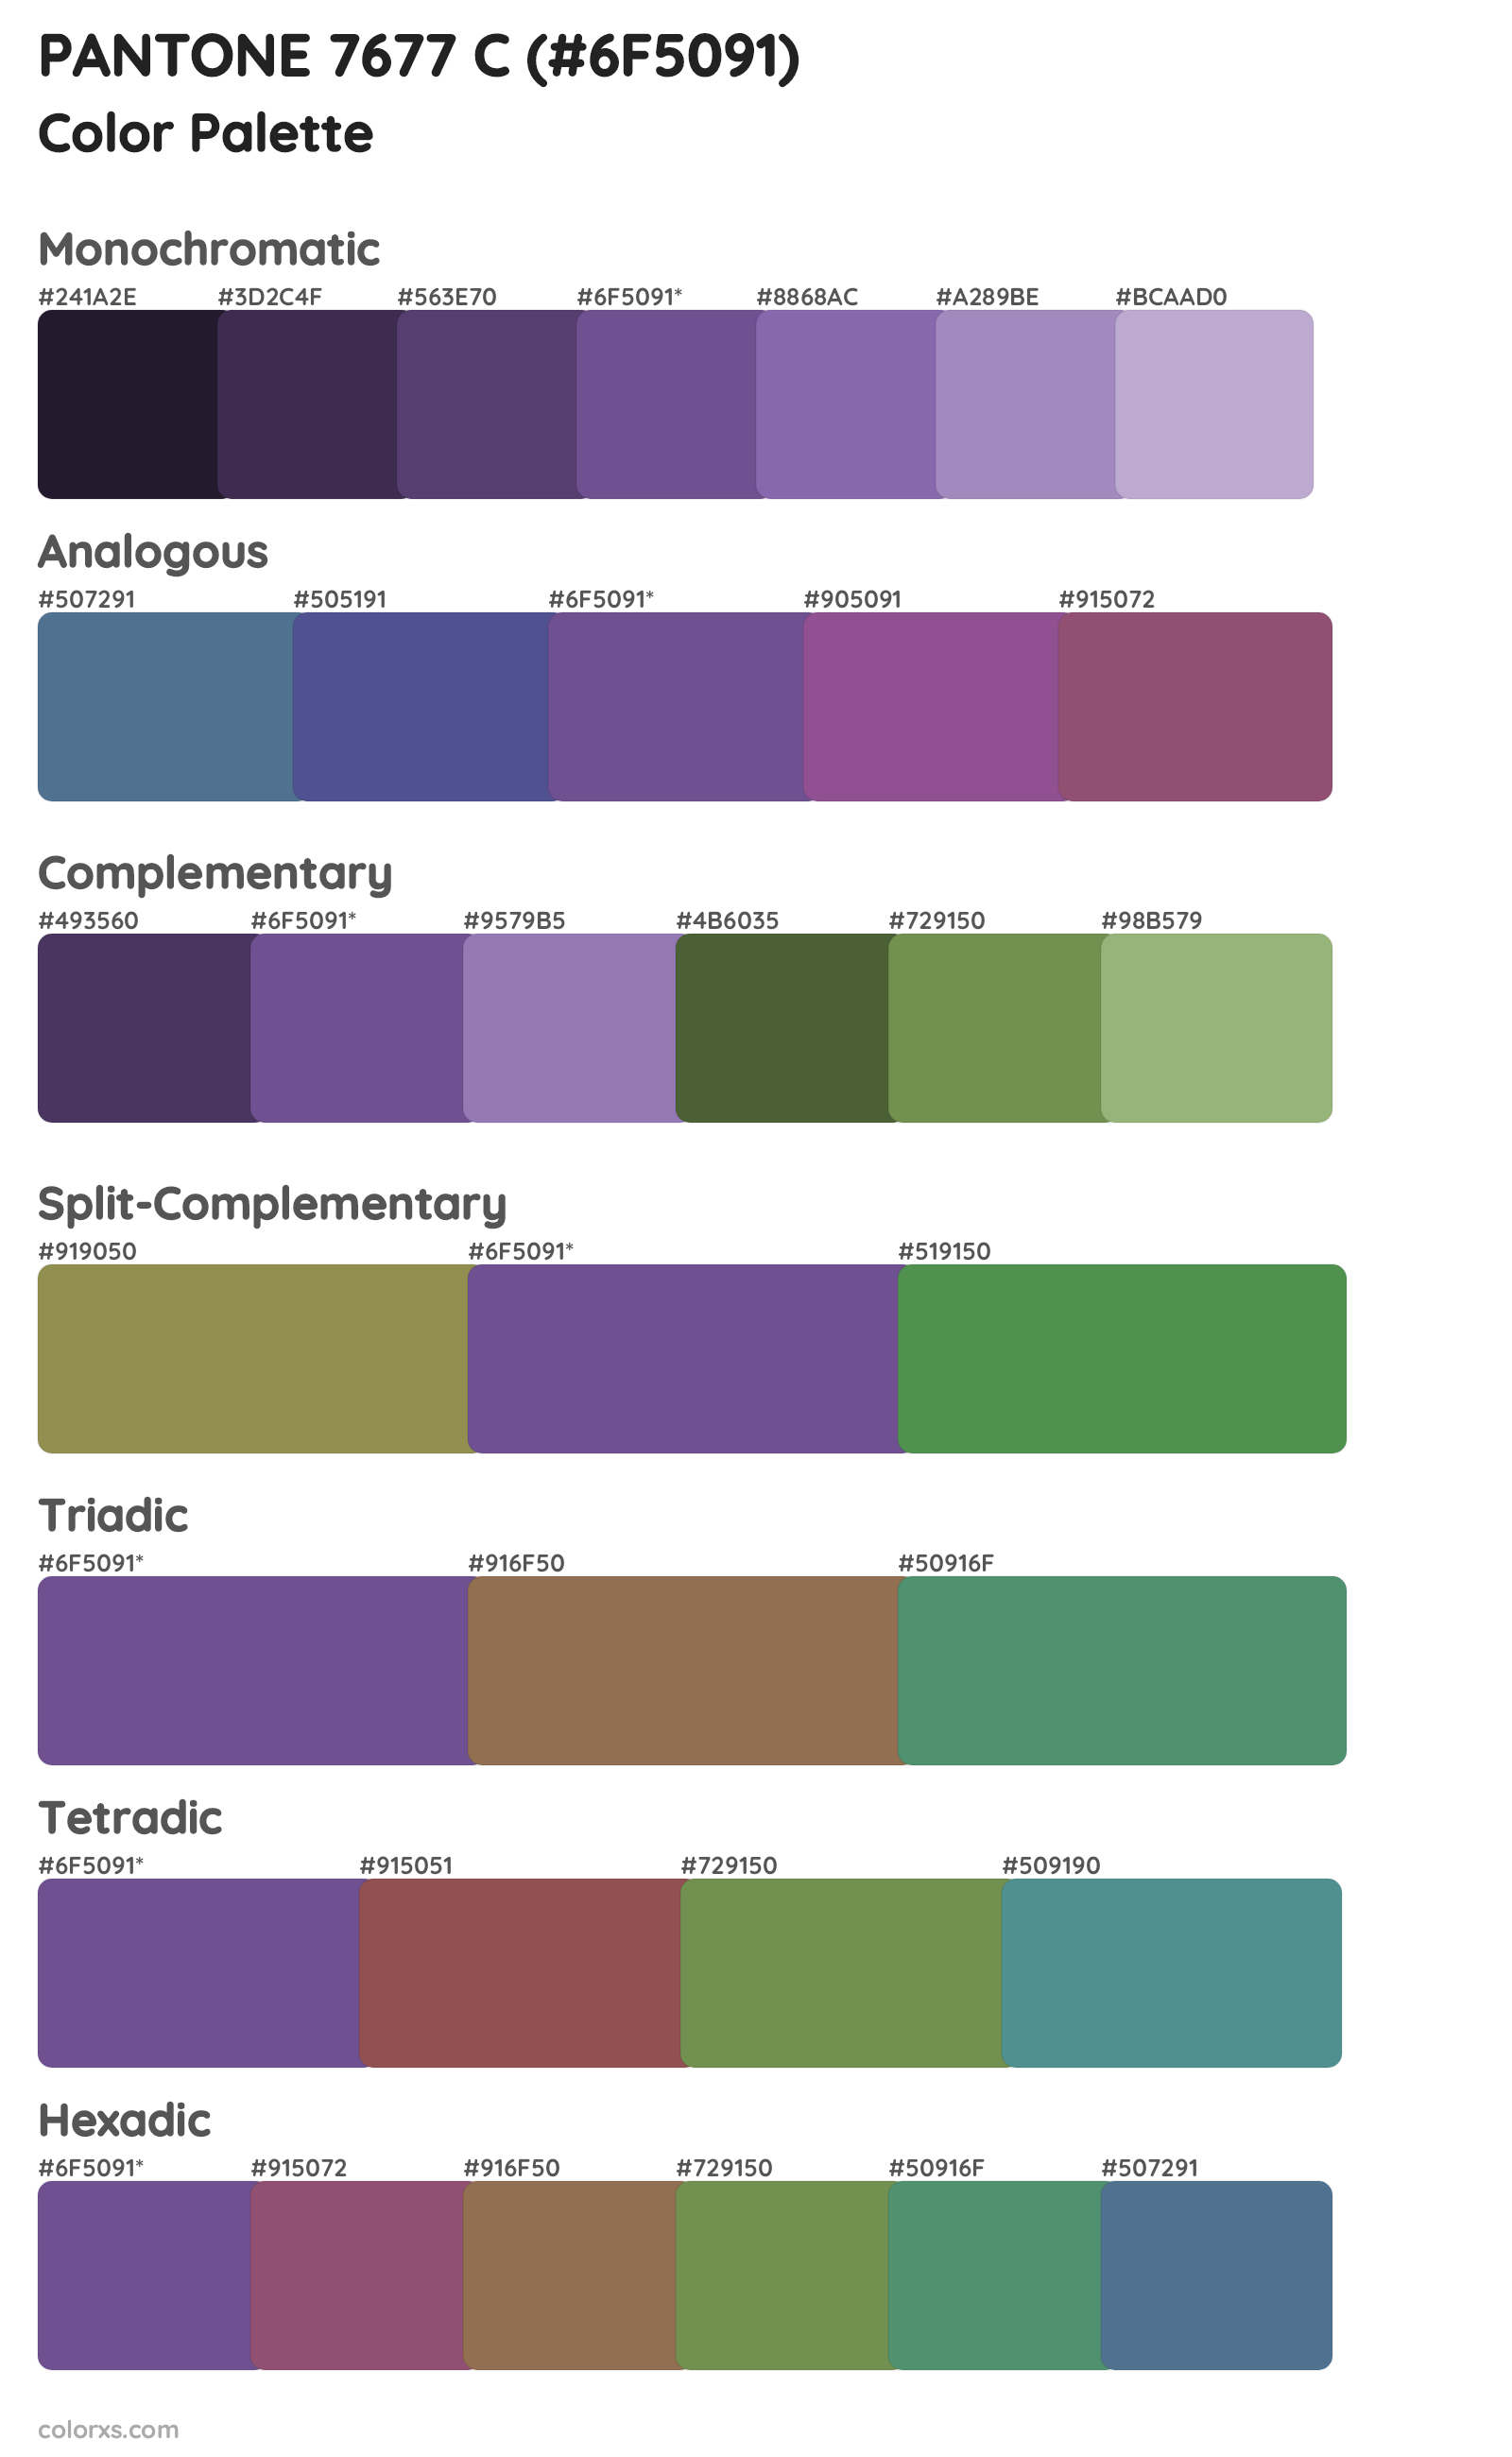 PANTONE 7677 C Color Scheme Palettes